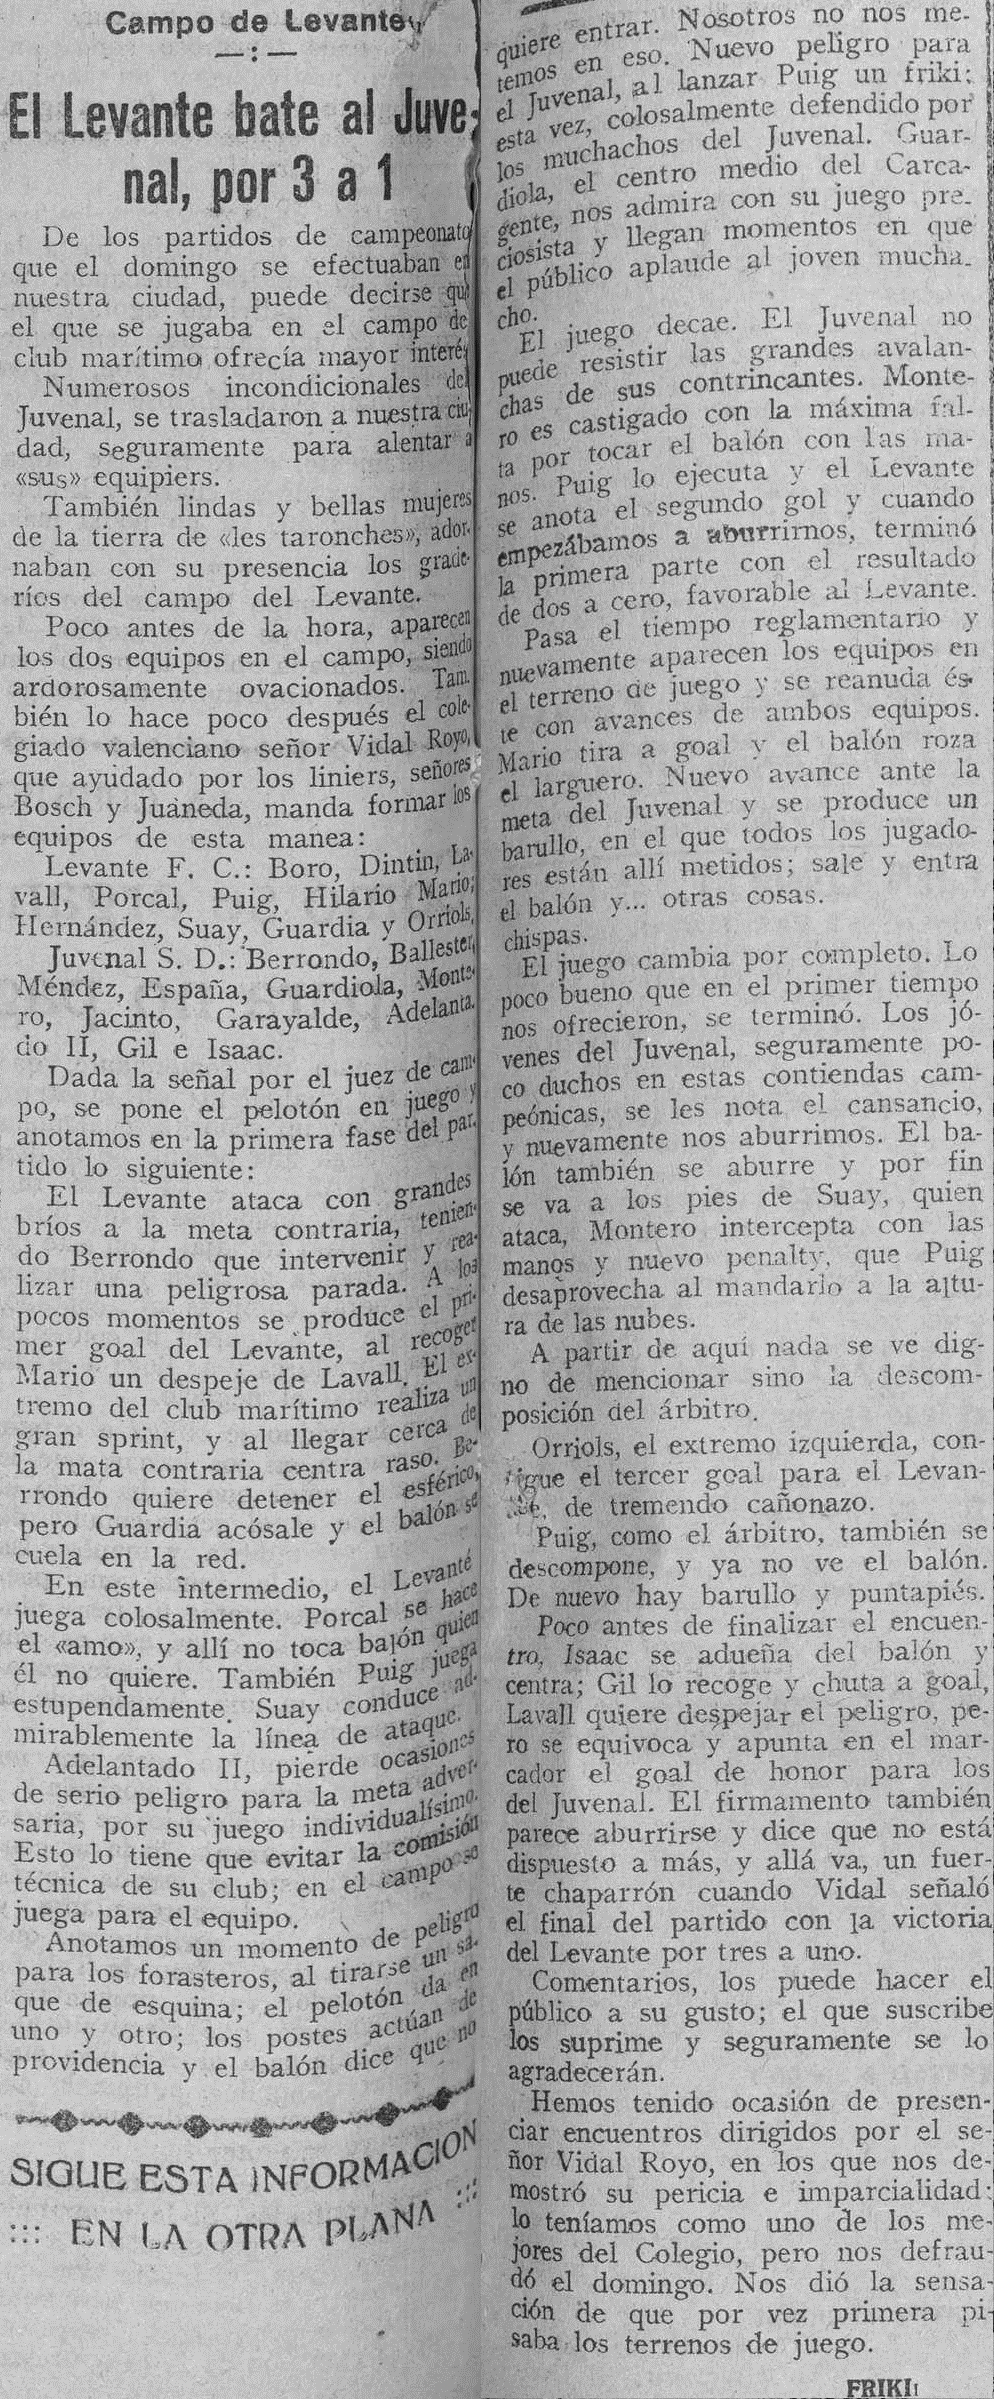 1926.10.31 (31 октября 1926), Леванте - Хувеналь, 3-1.png